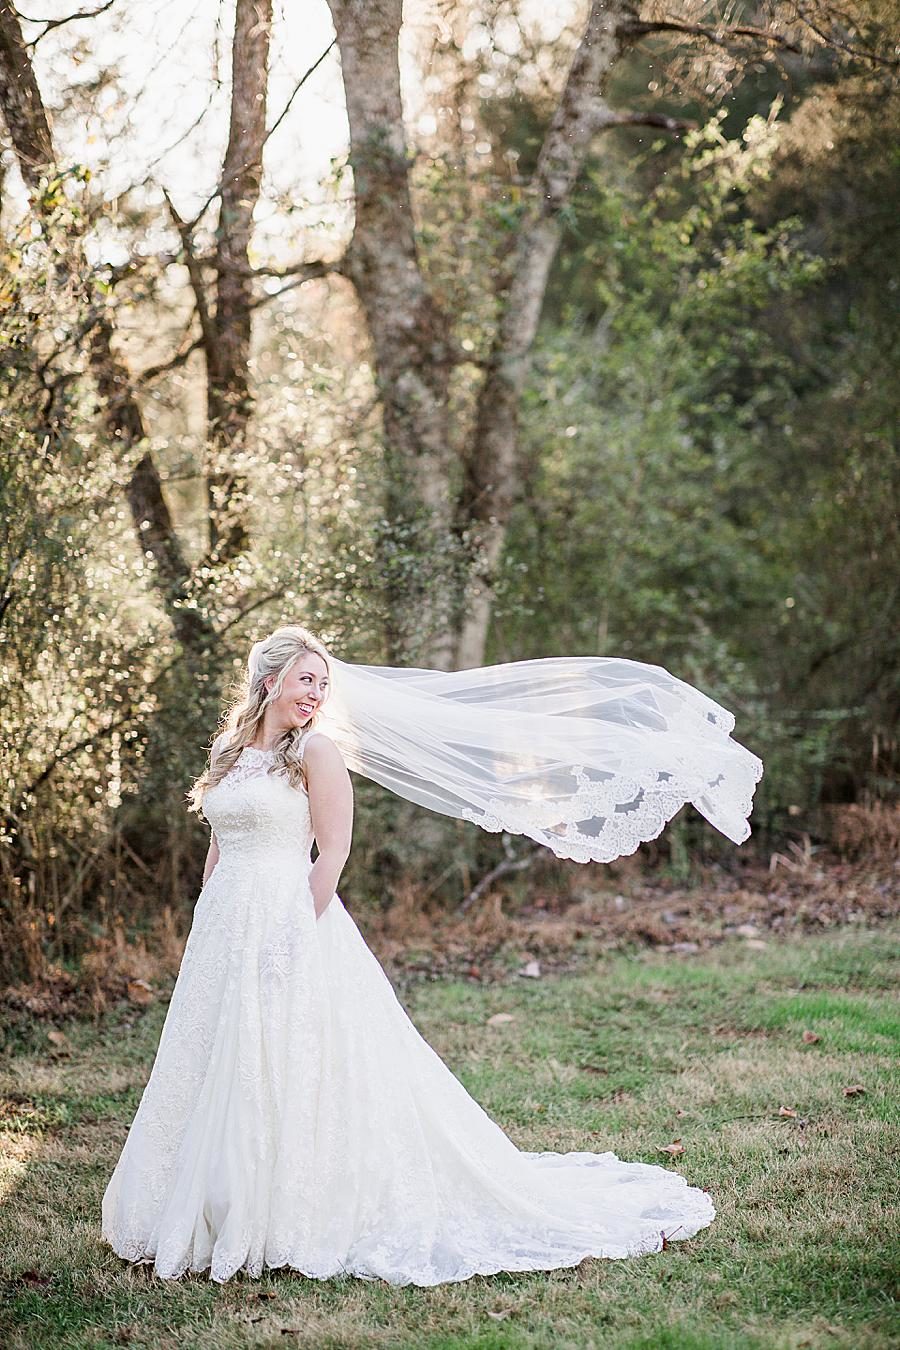 Pocket dress at this Ramble Creek Bridal Session by Knoxville Wedding Photographer, Amanda May Photos.